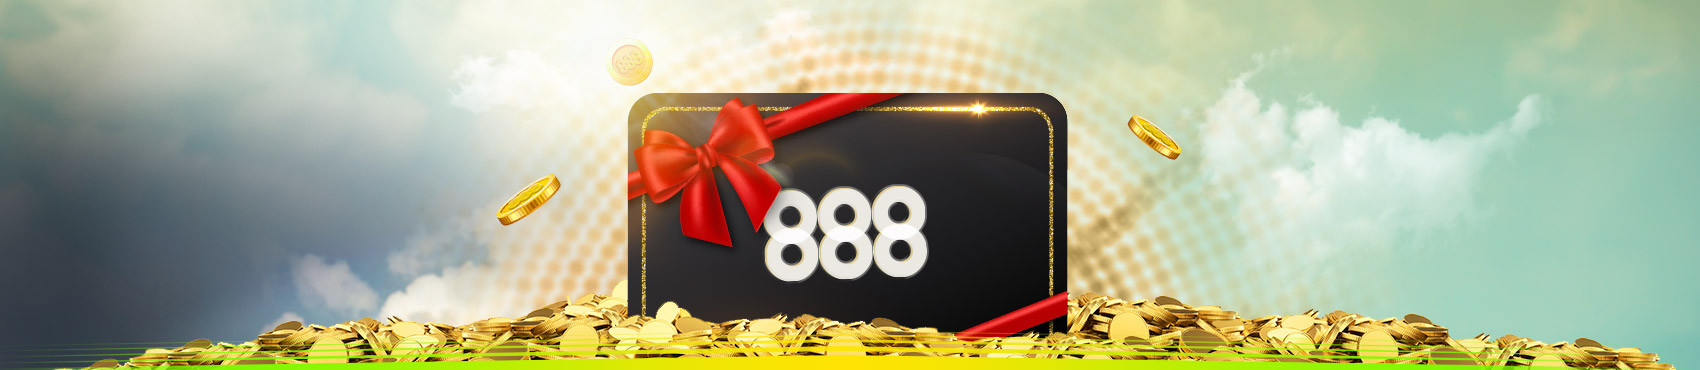 888sport online casino welcome bonus